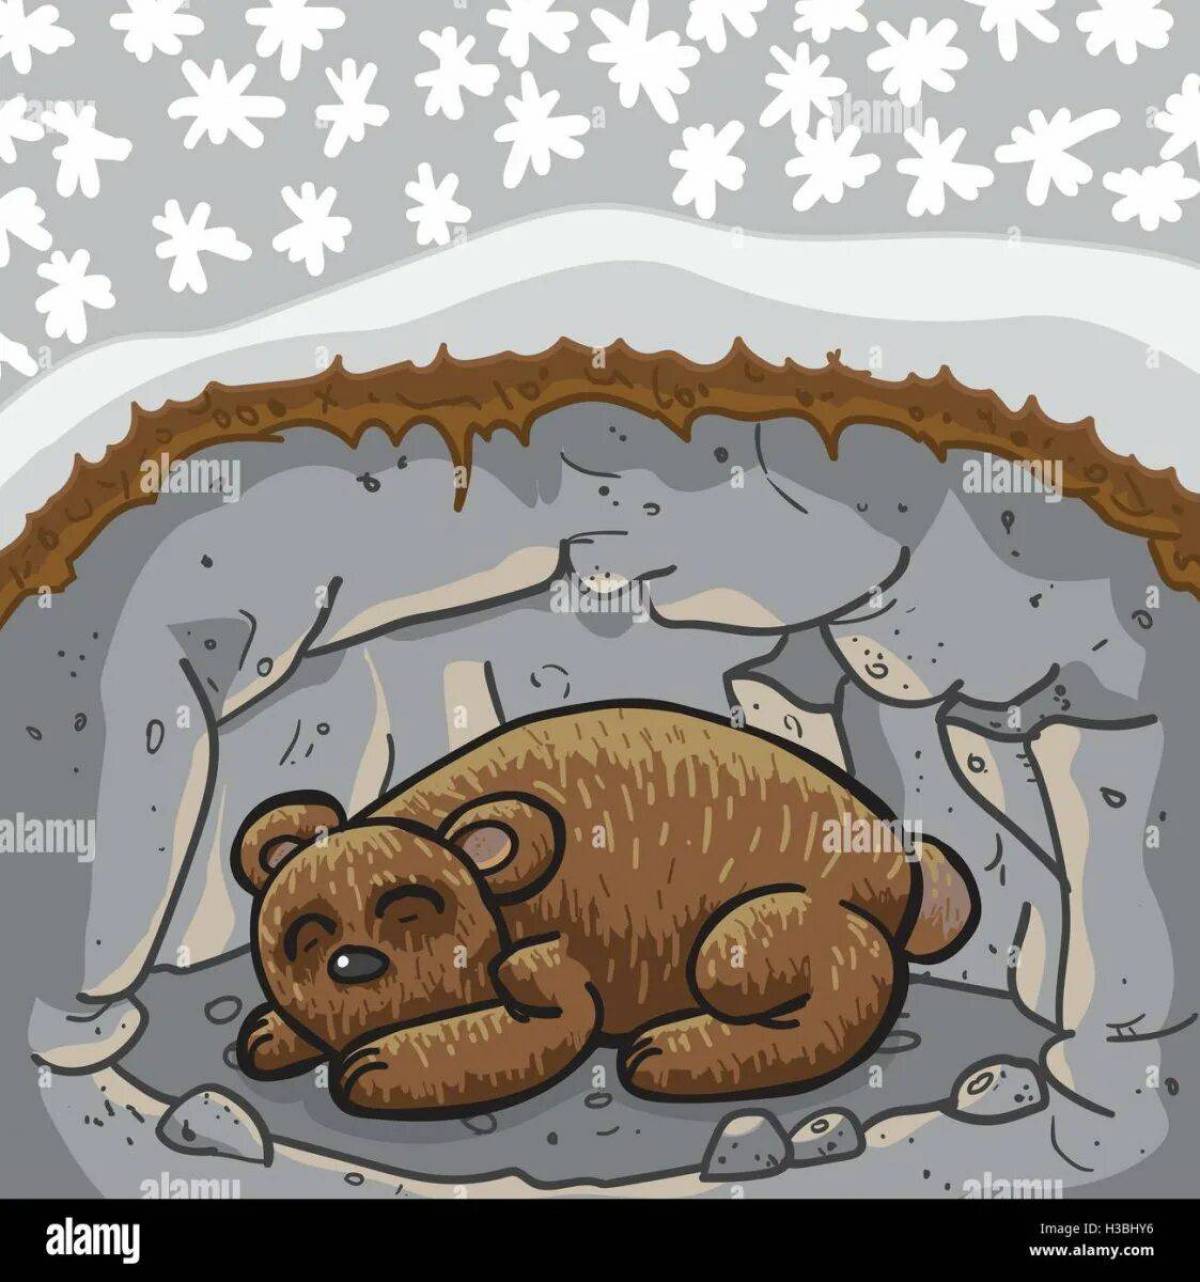 Медведь спит в берлоге #27